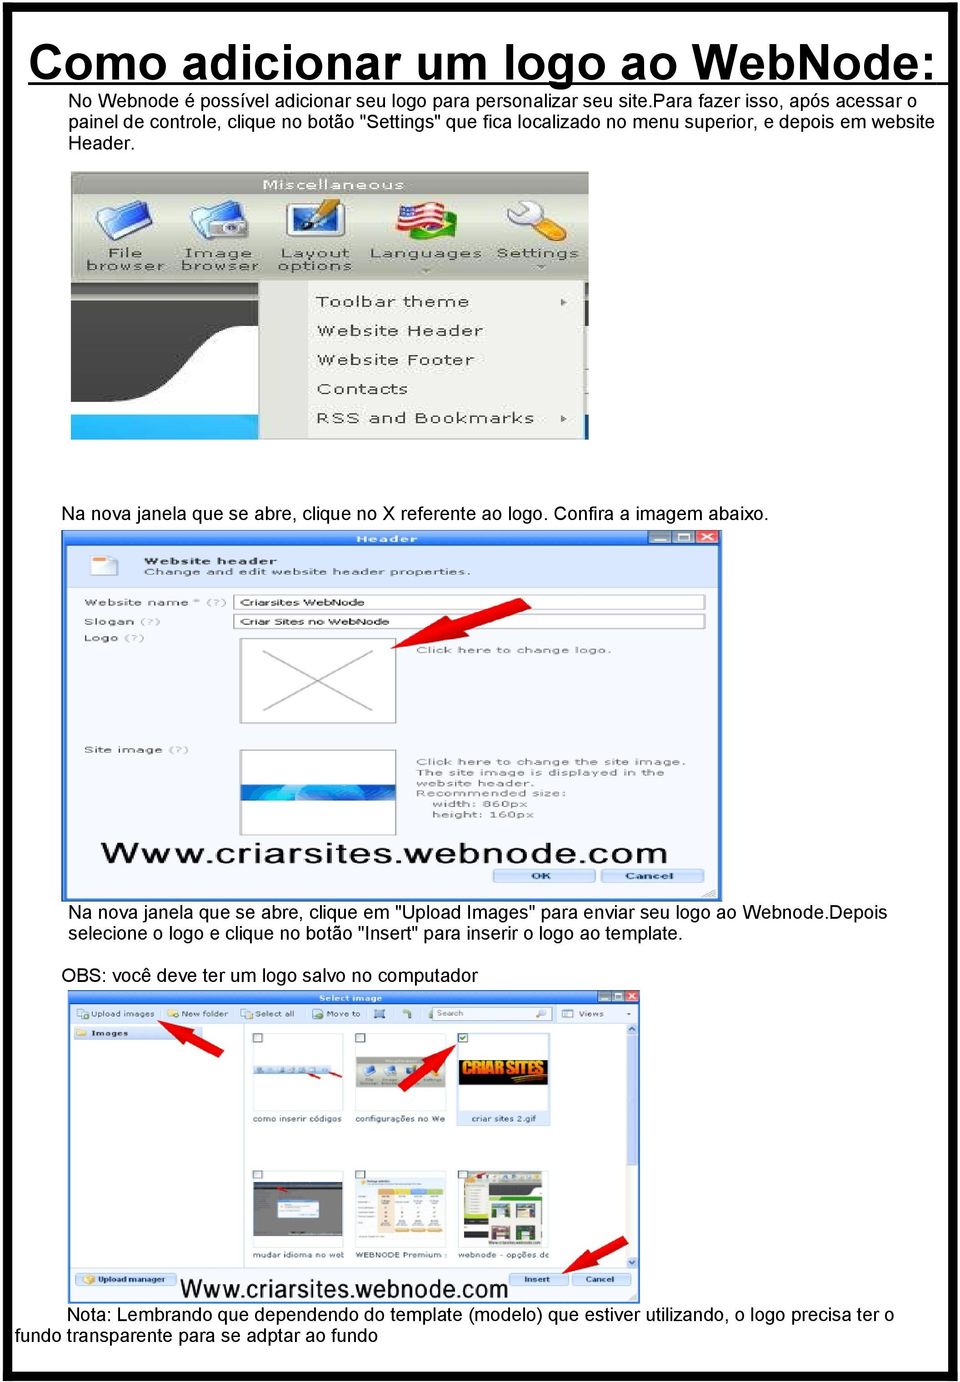 Na nova janela que se abre, clique no X referente ao logo. Confira a imagem abaixo. Na nova janela que se abre, clique em "Upload Images" para enviar seu logo ao Webnode.